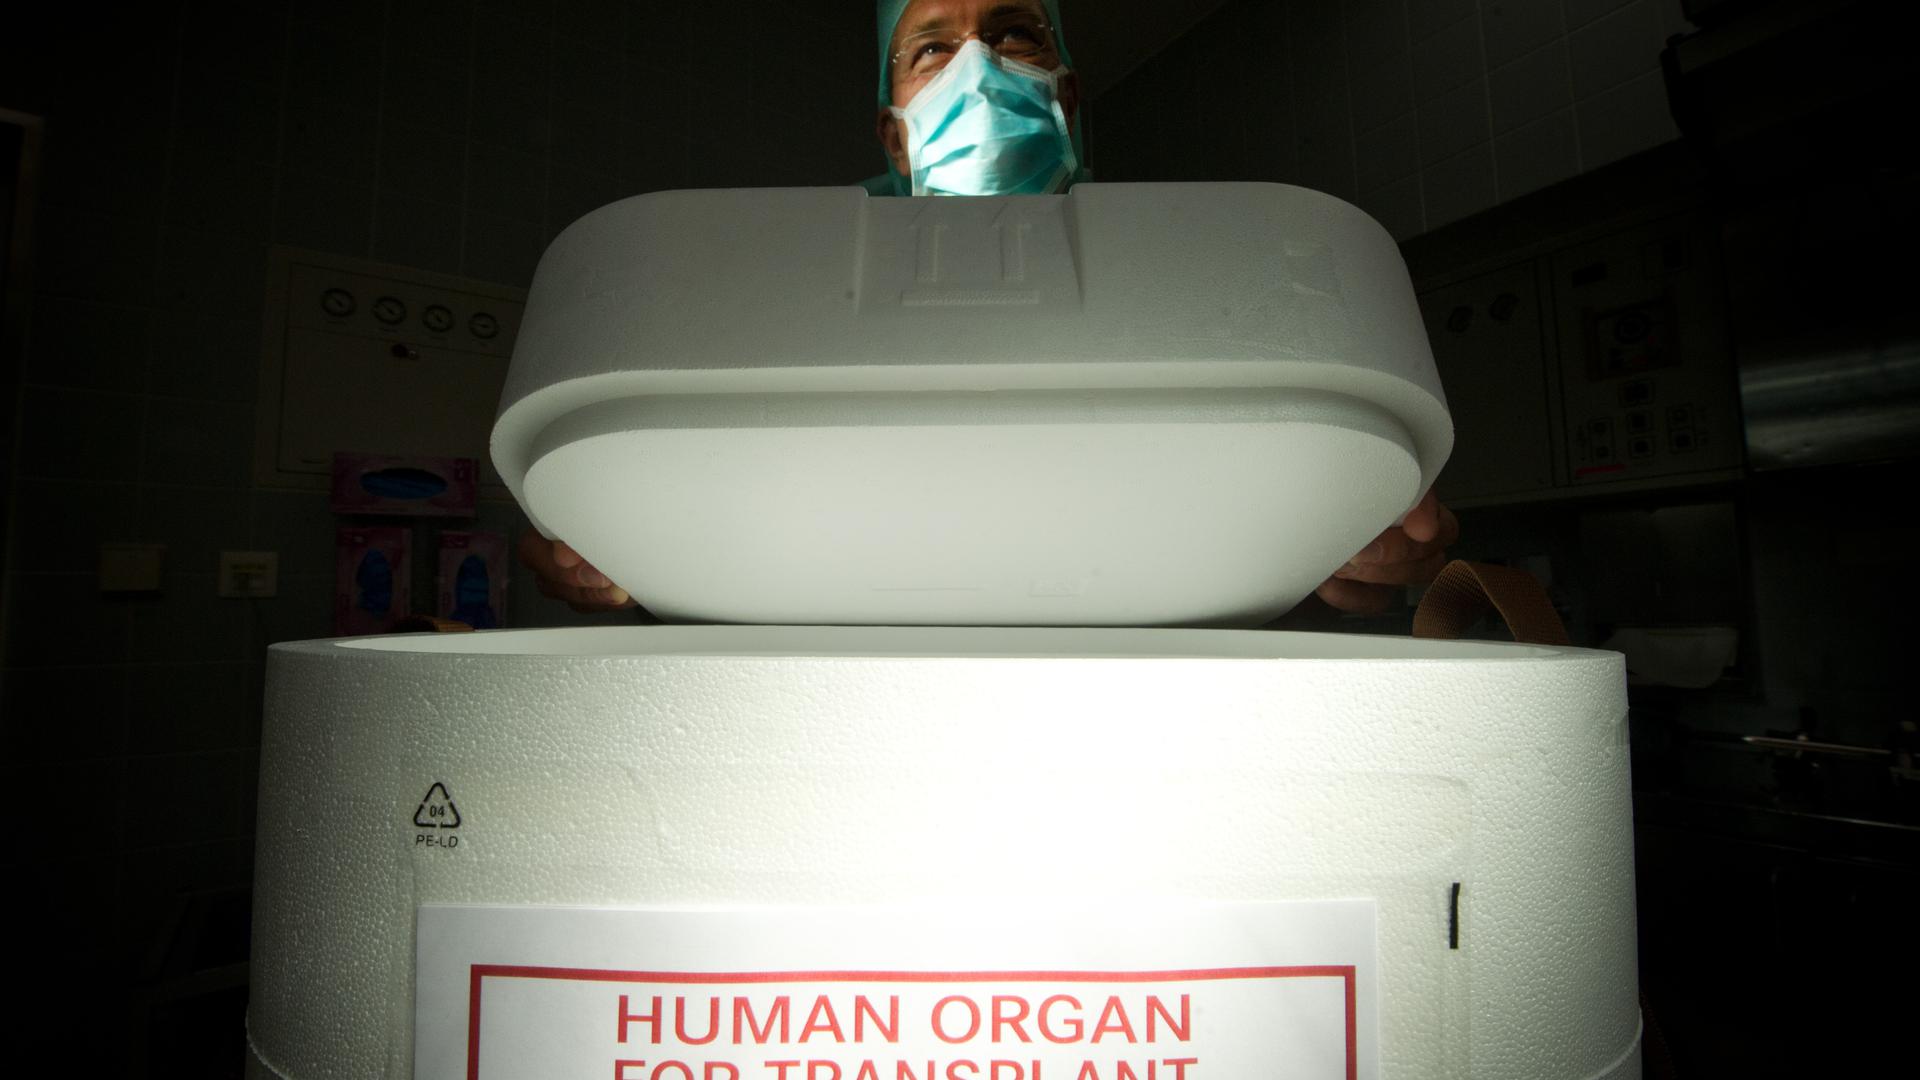 Ein Styropor-Behälter zum Transport von zur Transplantation vorgesehenen Organen steht am 27.09.2012 in Berlin im Operationssaal eines Krankenhauses auf einem Tisch. 